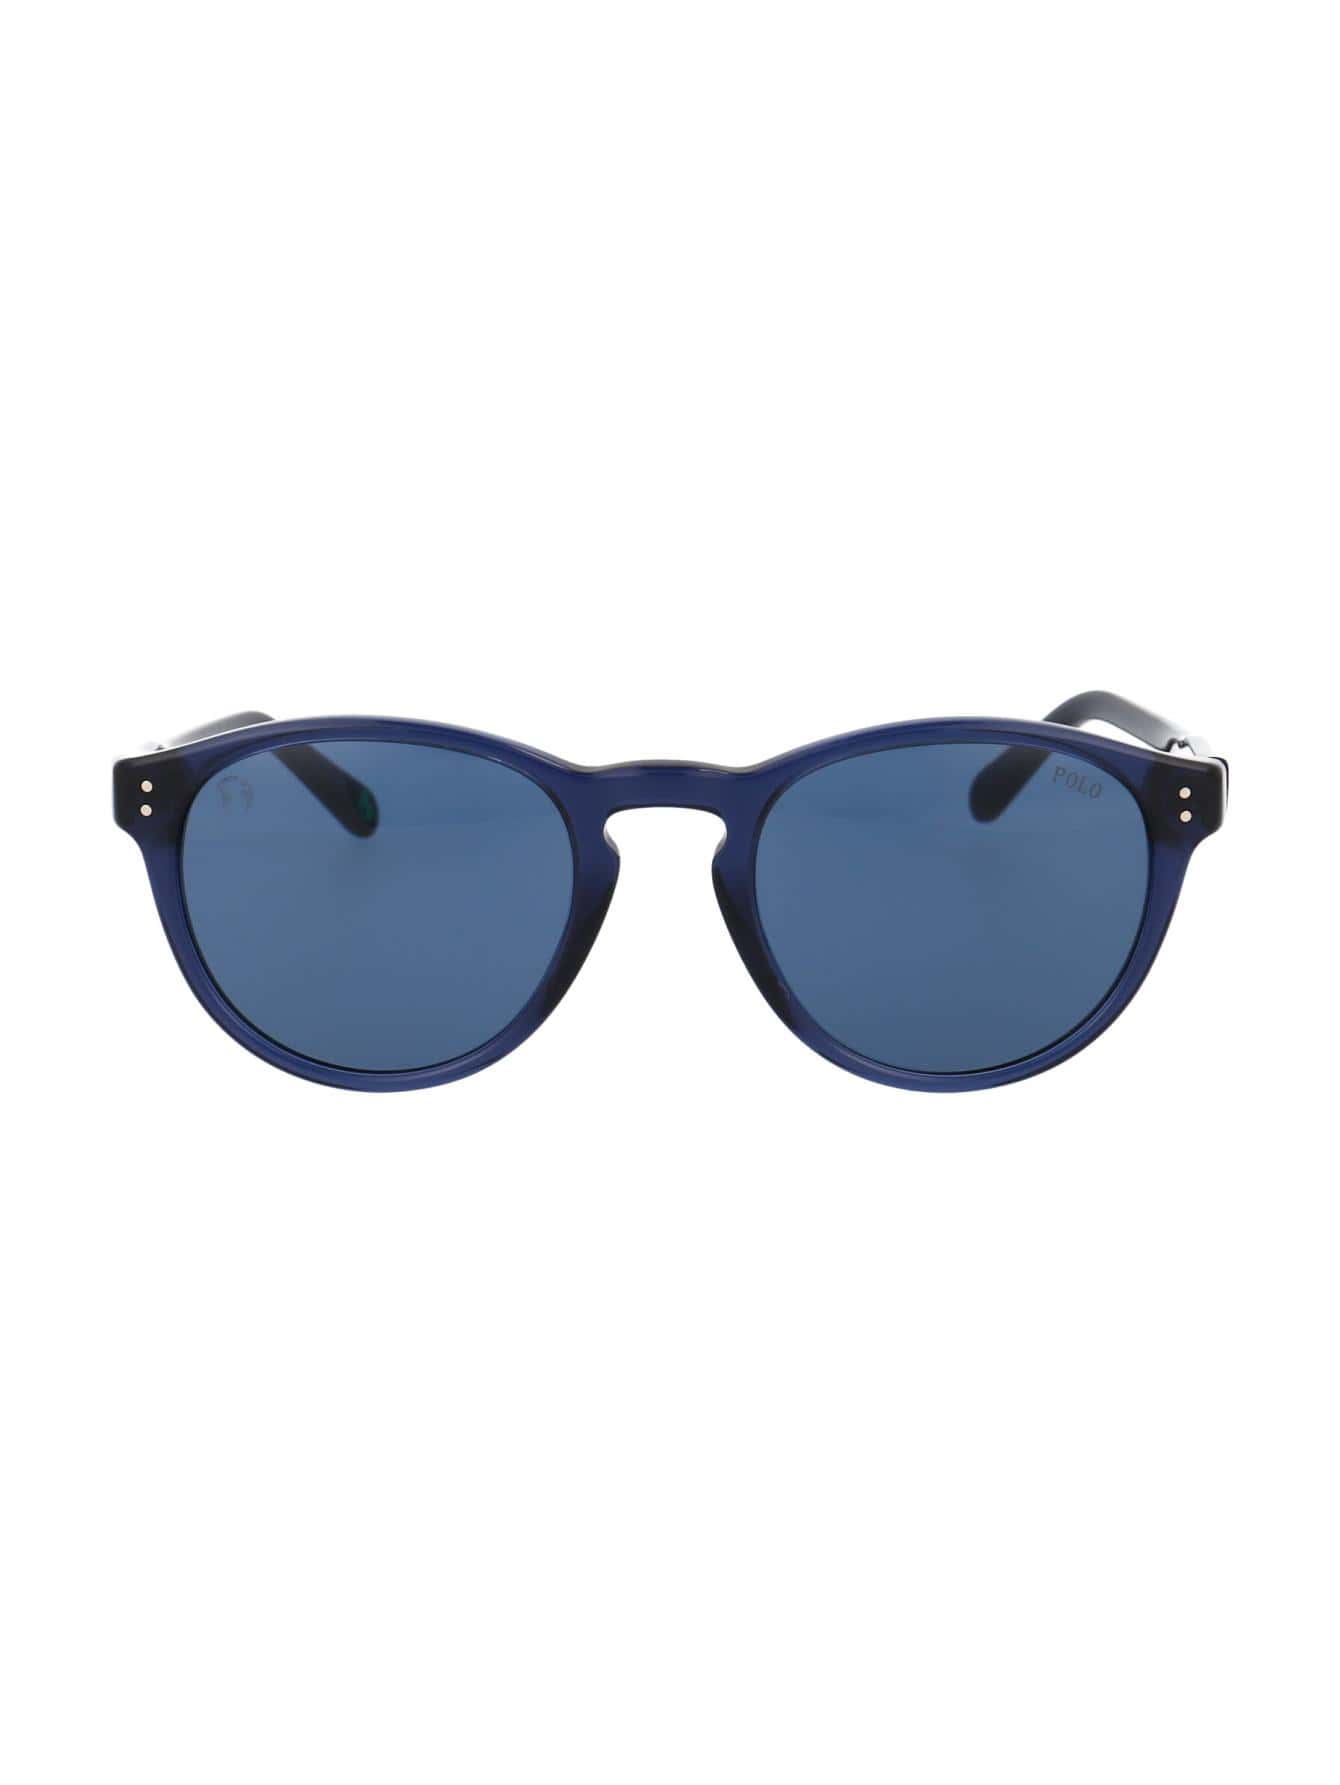 Мужские солнцезащитные очки Polo Ralph Lauren СИНИЕ 0PH4172595580, синий солнцезащитные очки ralph 0ra5160 501 11